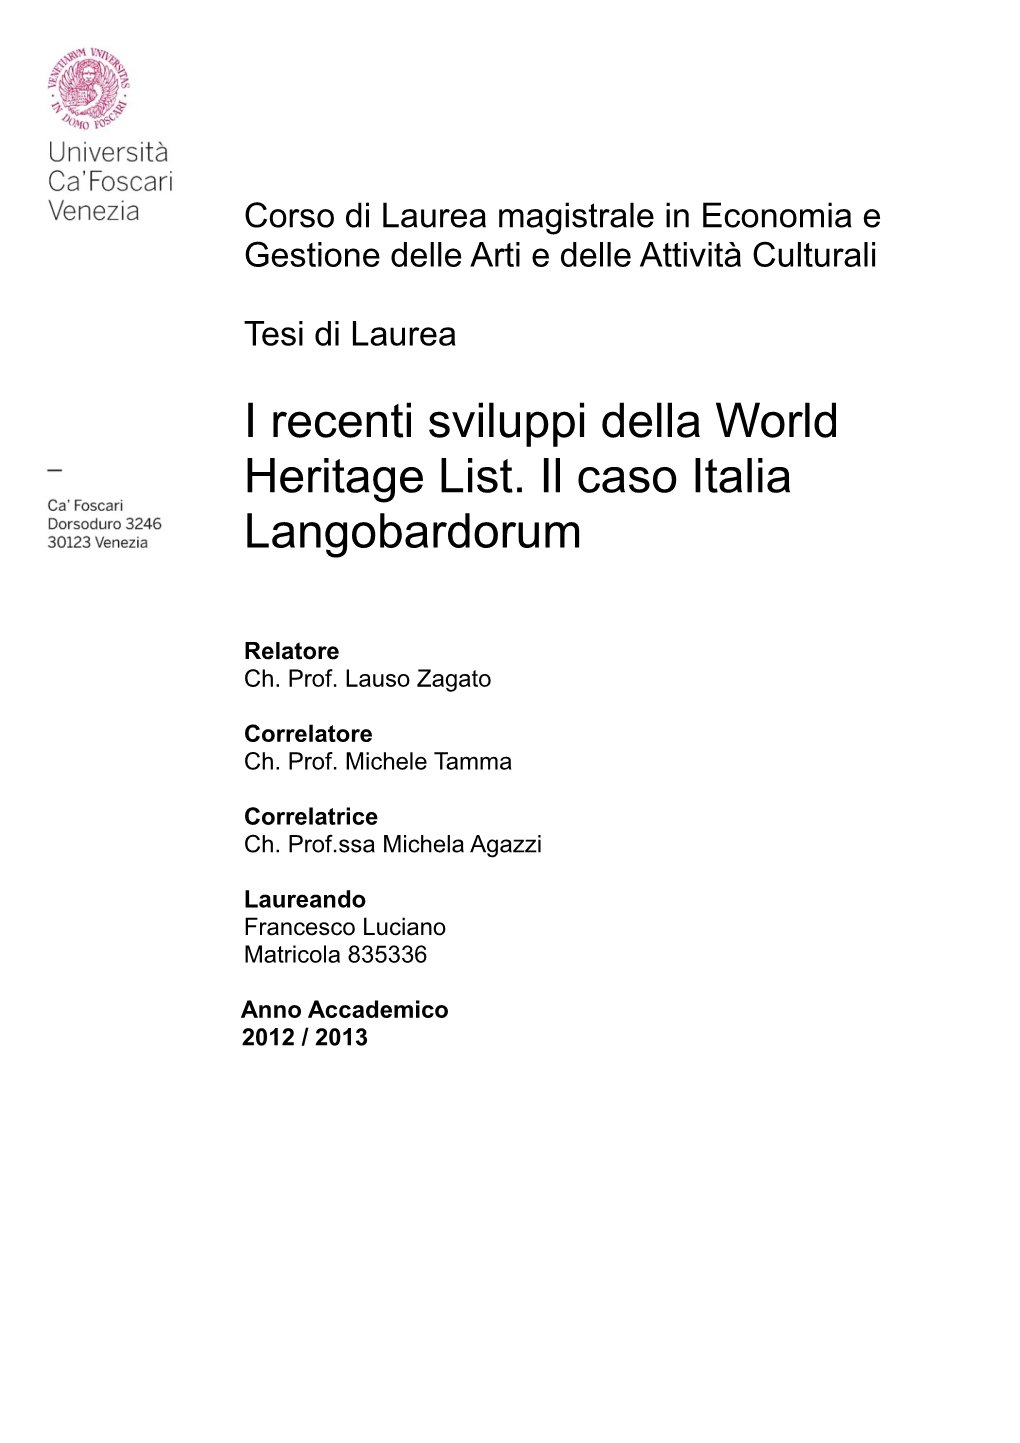 I Recenti Sviluppi Della World Heritage List. Il Caso Italia Langobardorum